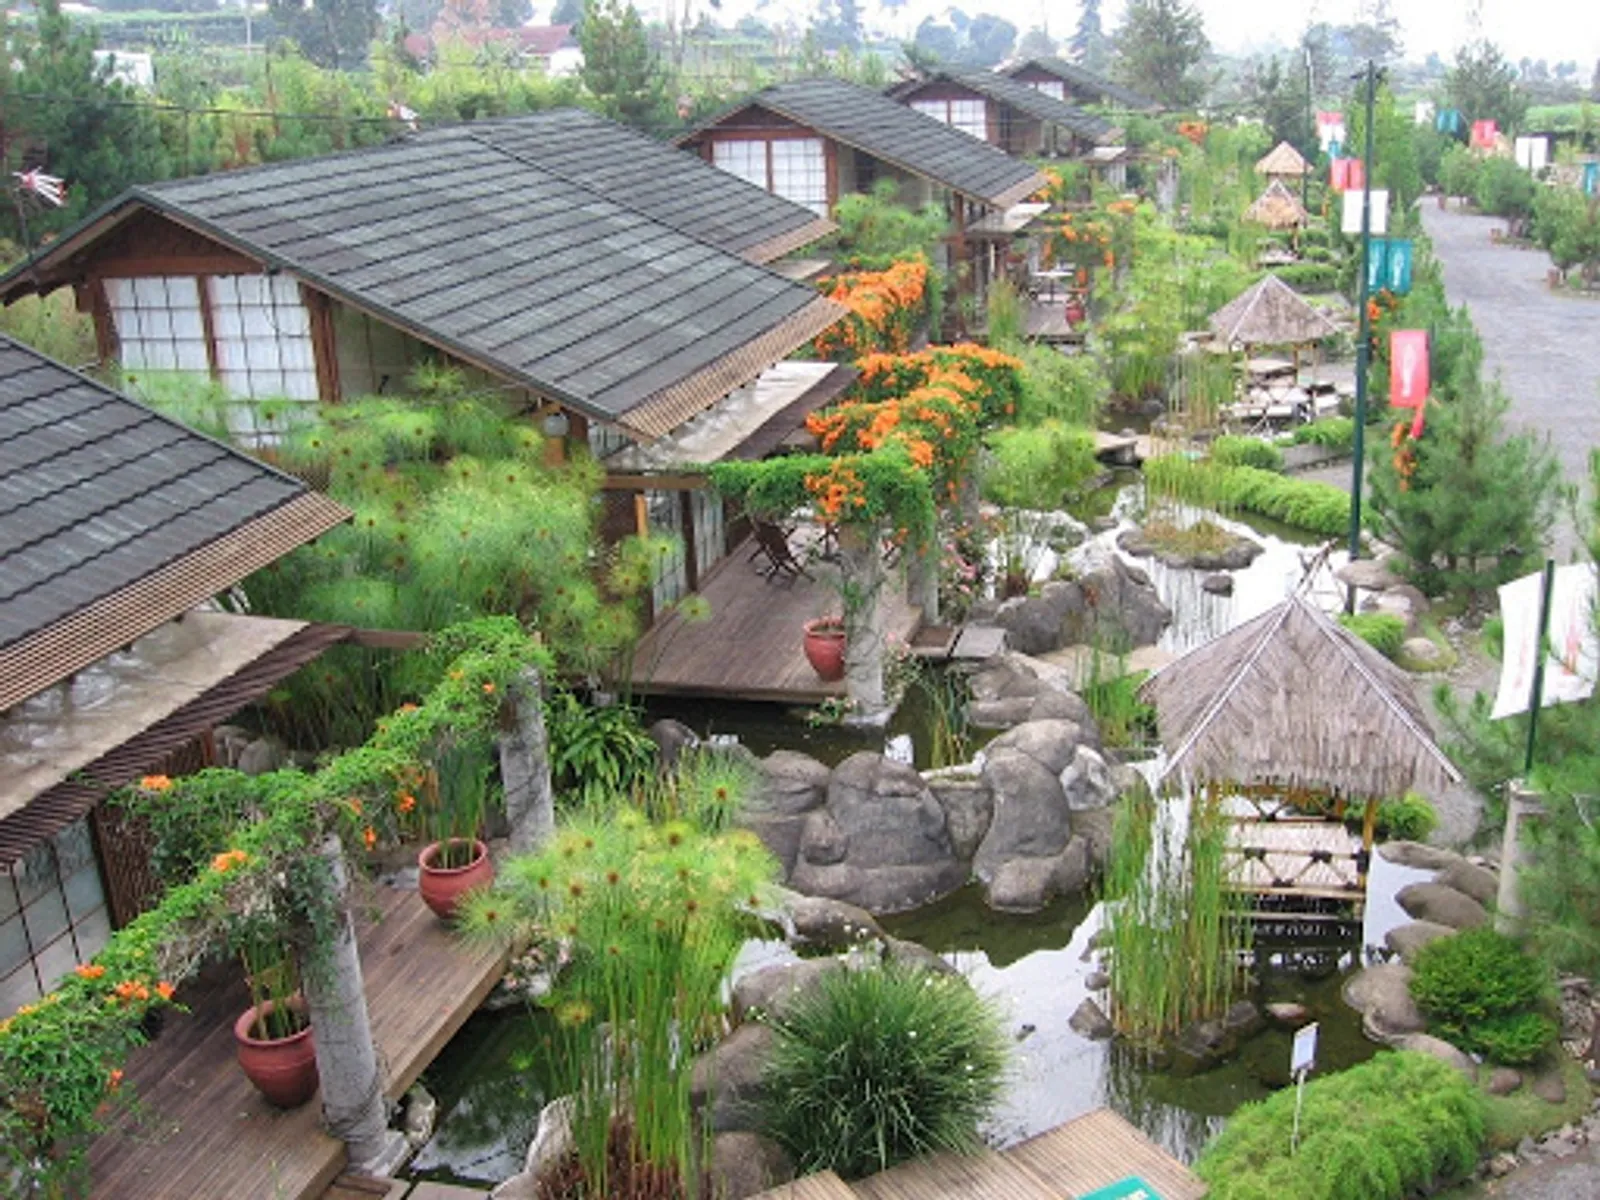 Sejuk dan Dingin, Inilah 7 Staycation Alam di Bandung